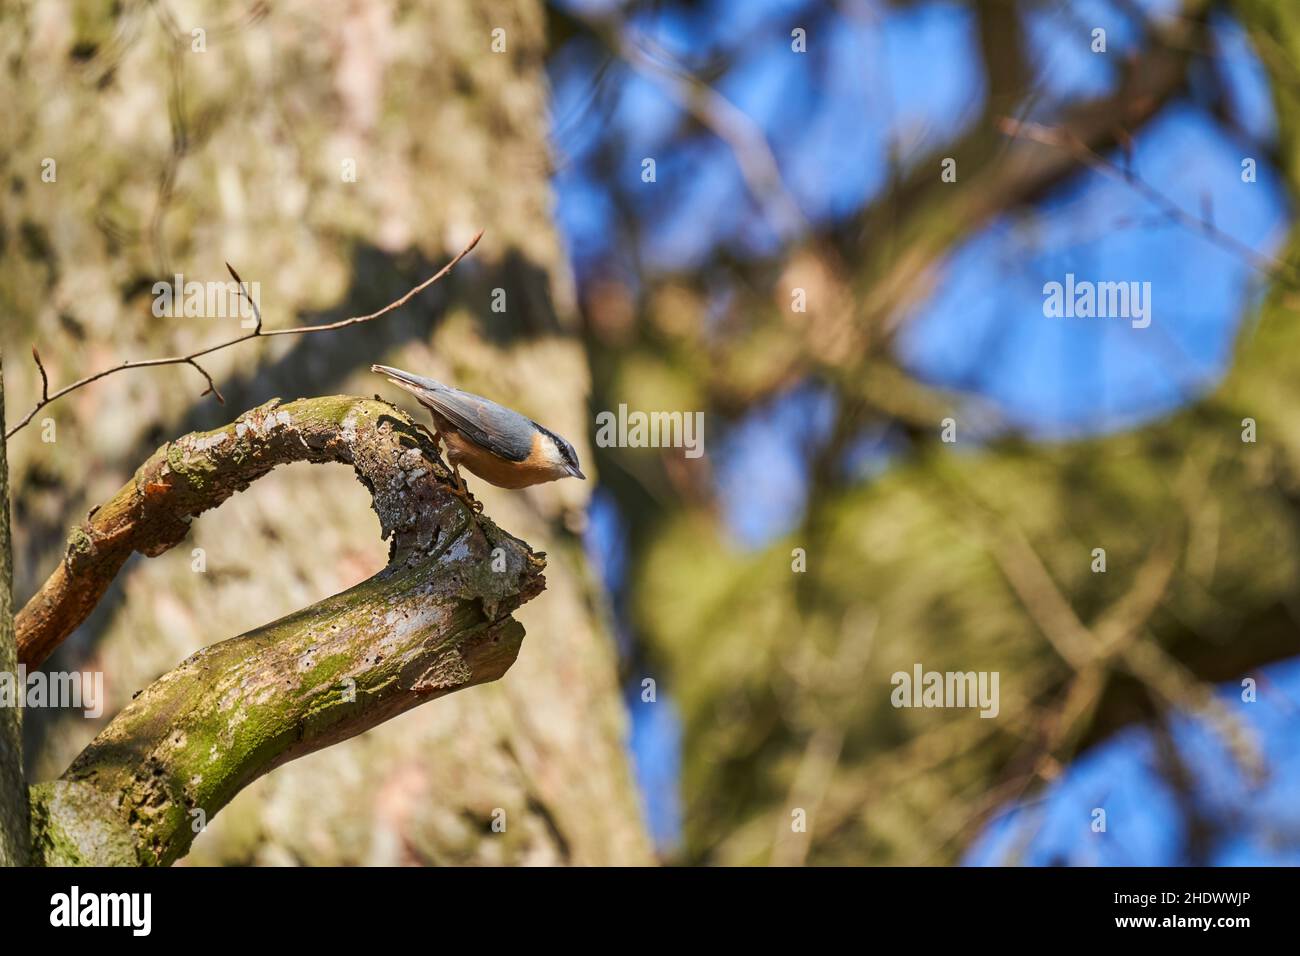 Le Nuthatch eurasien ou nuthatch de bois, Sitta europae, est un petit oiseau de passereau à queue courte avec une longue queue, des parties supérieures grises bleues et un noir Banque D'Images